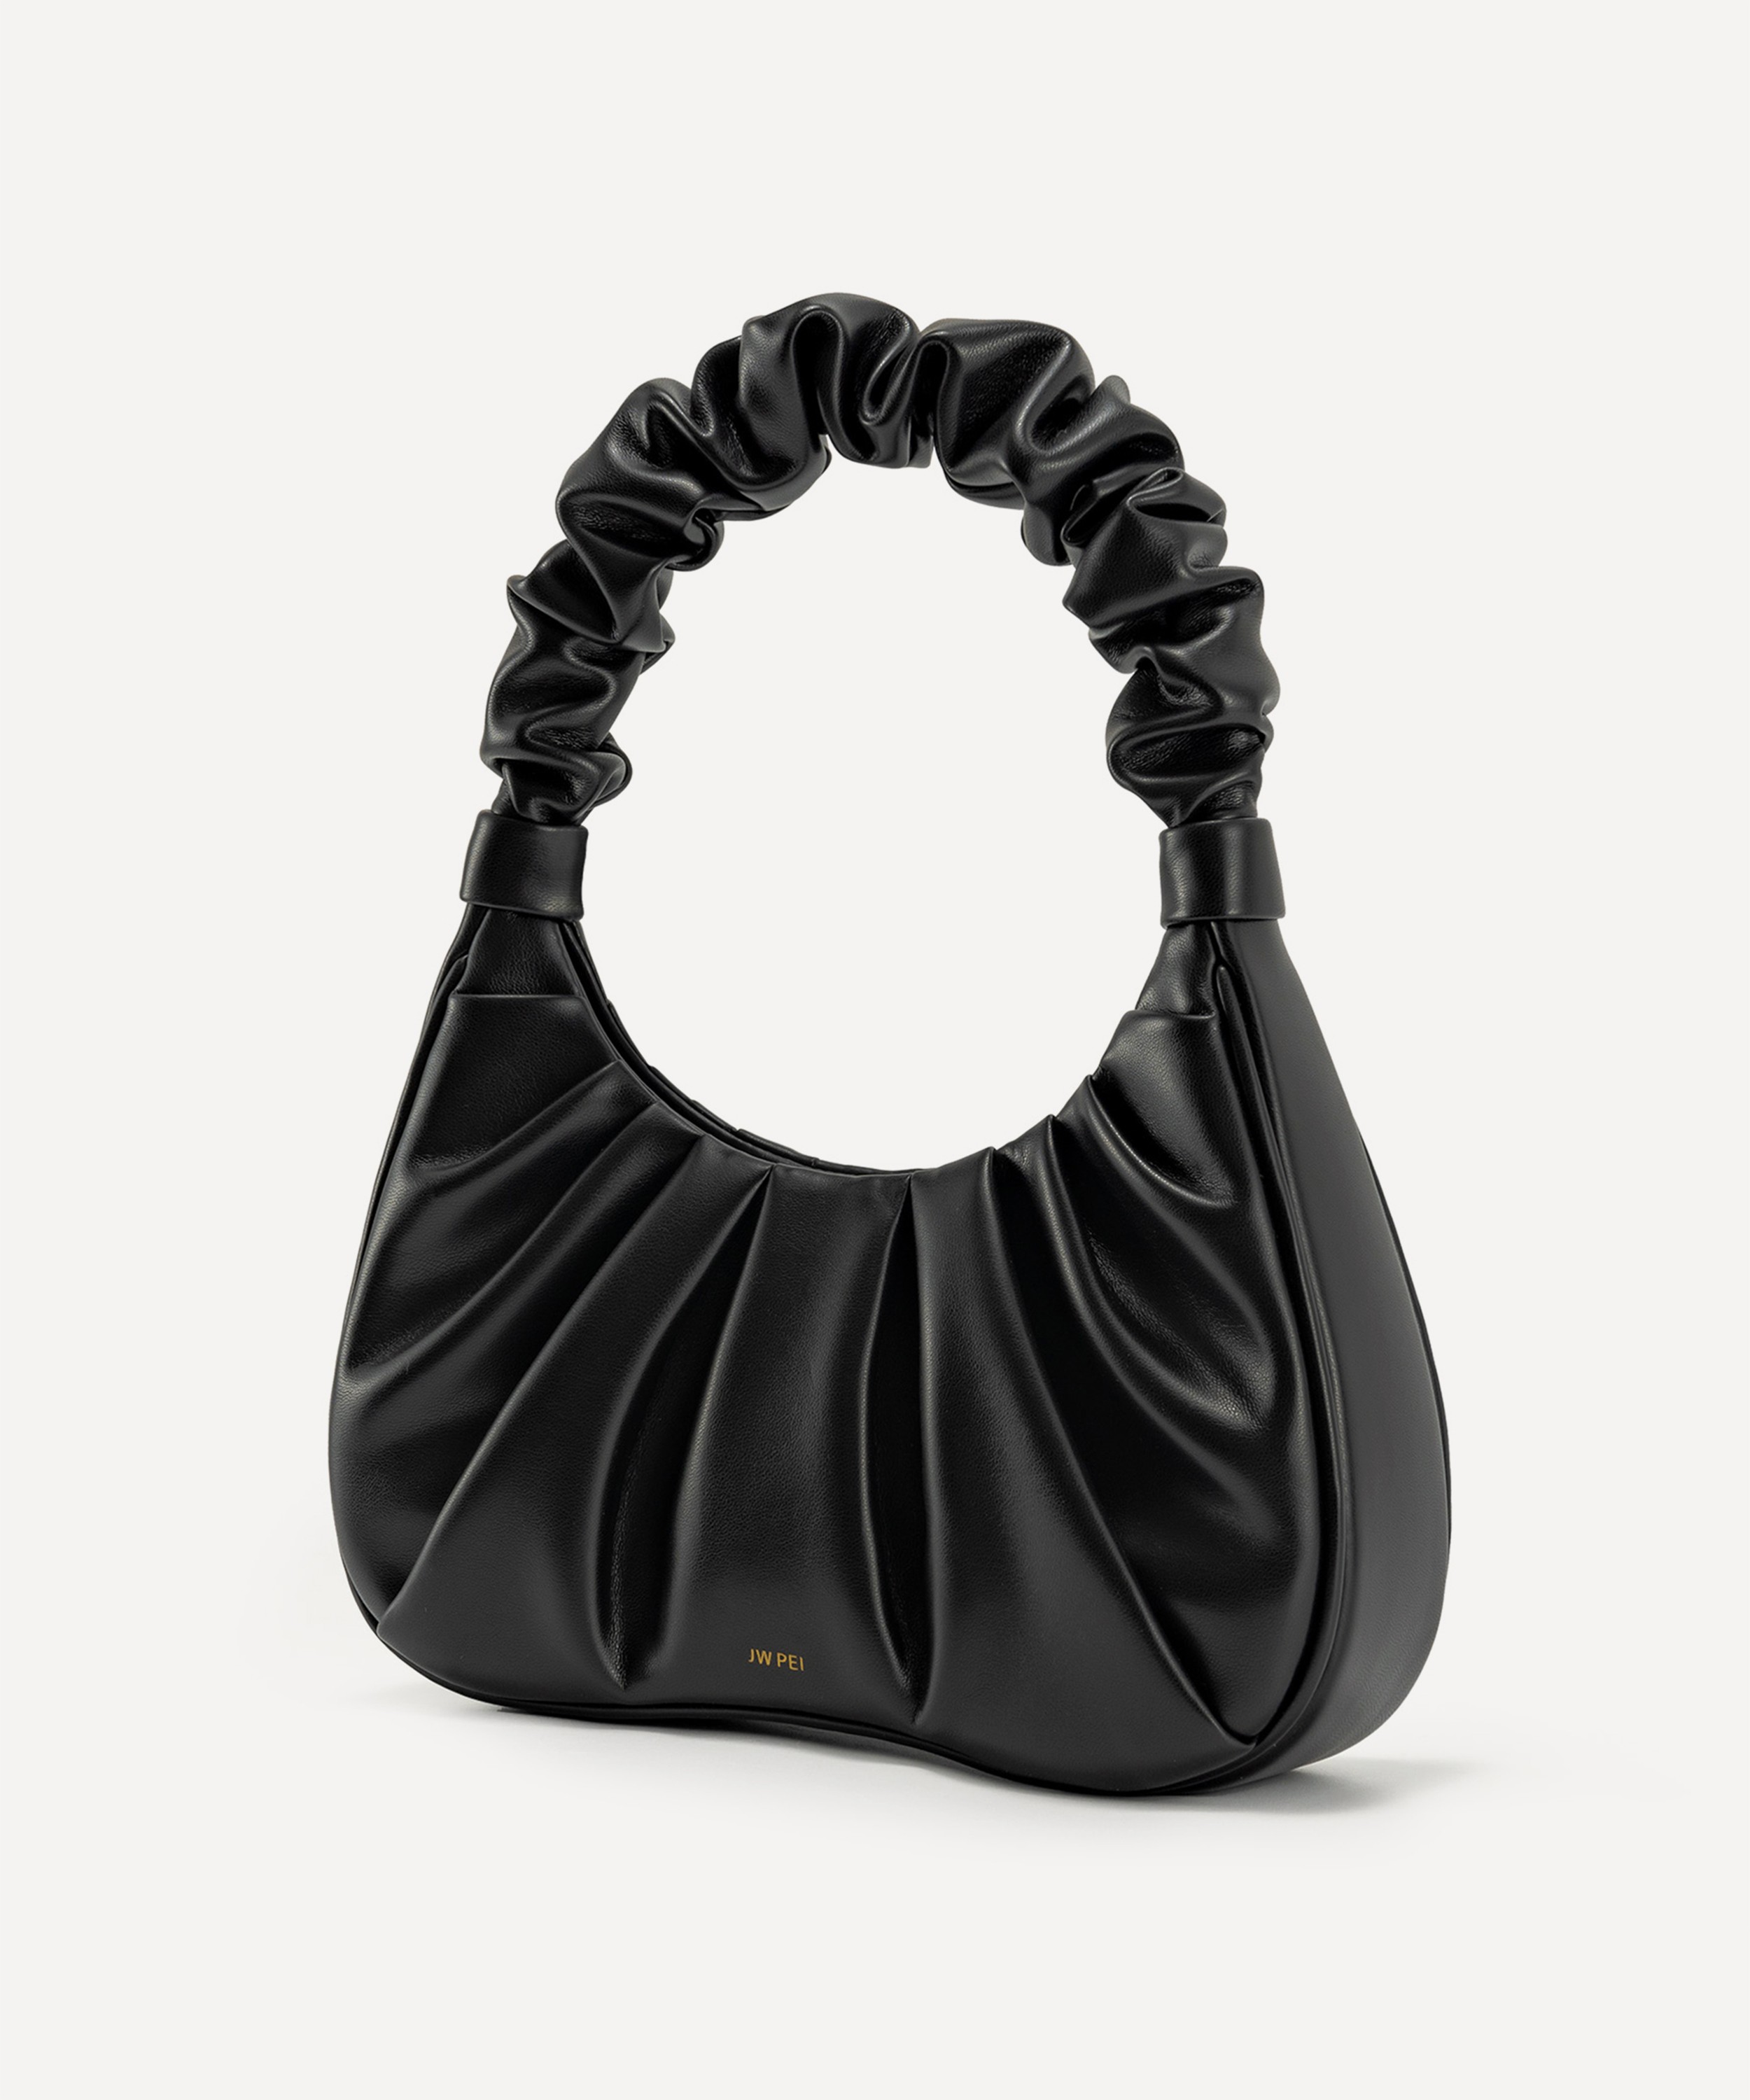 Ruched Design Hobo Bag Black Fashionable Shoulder Bag